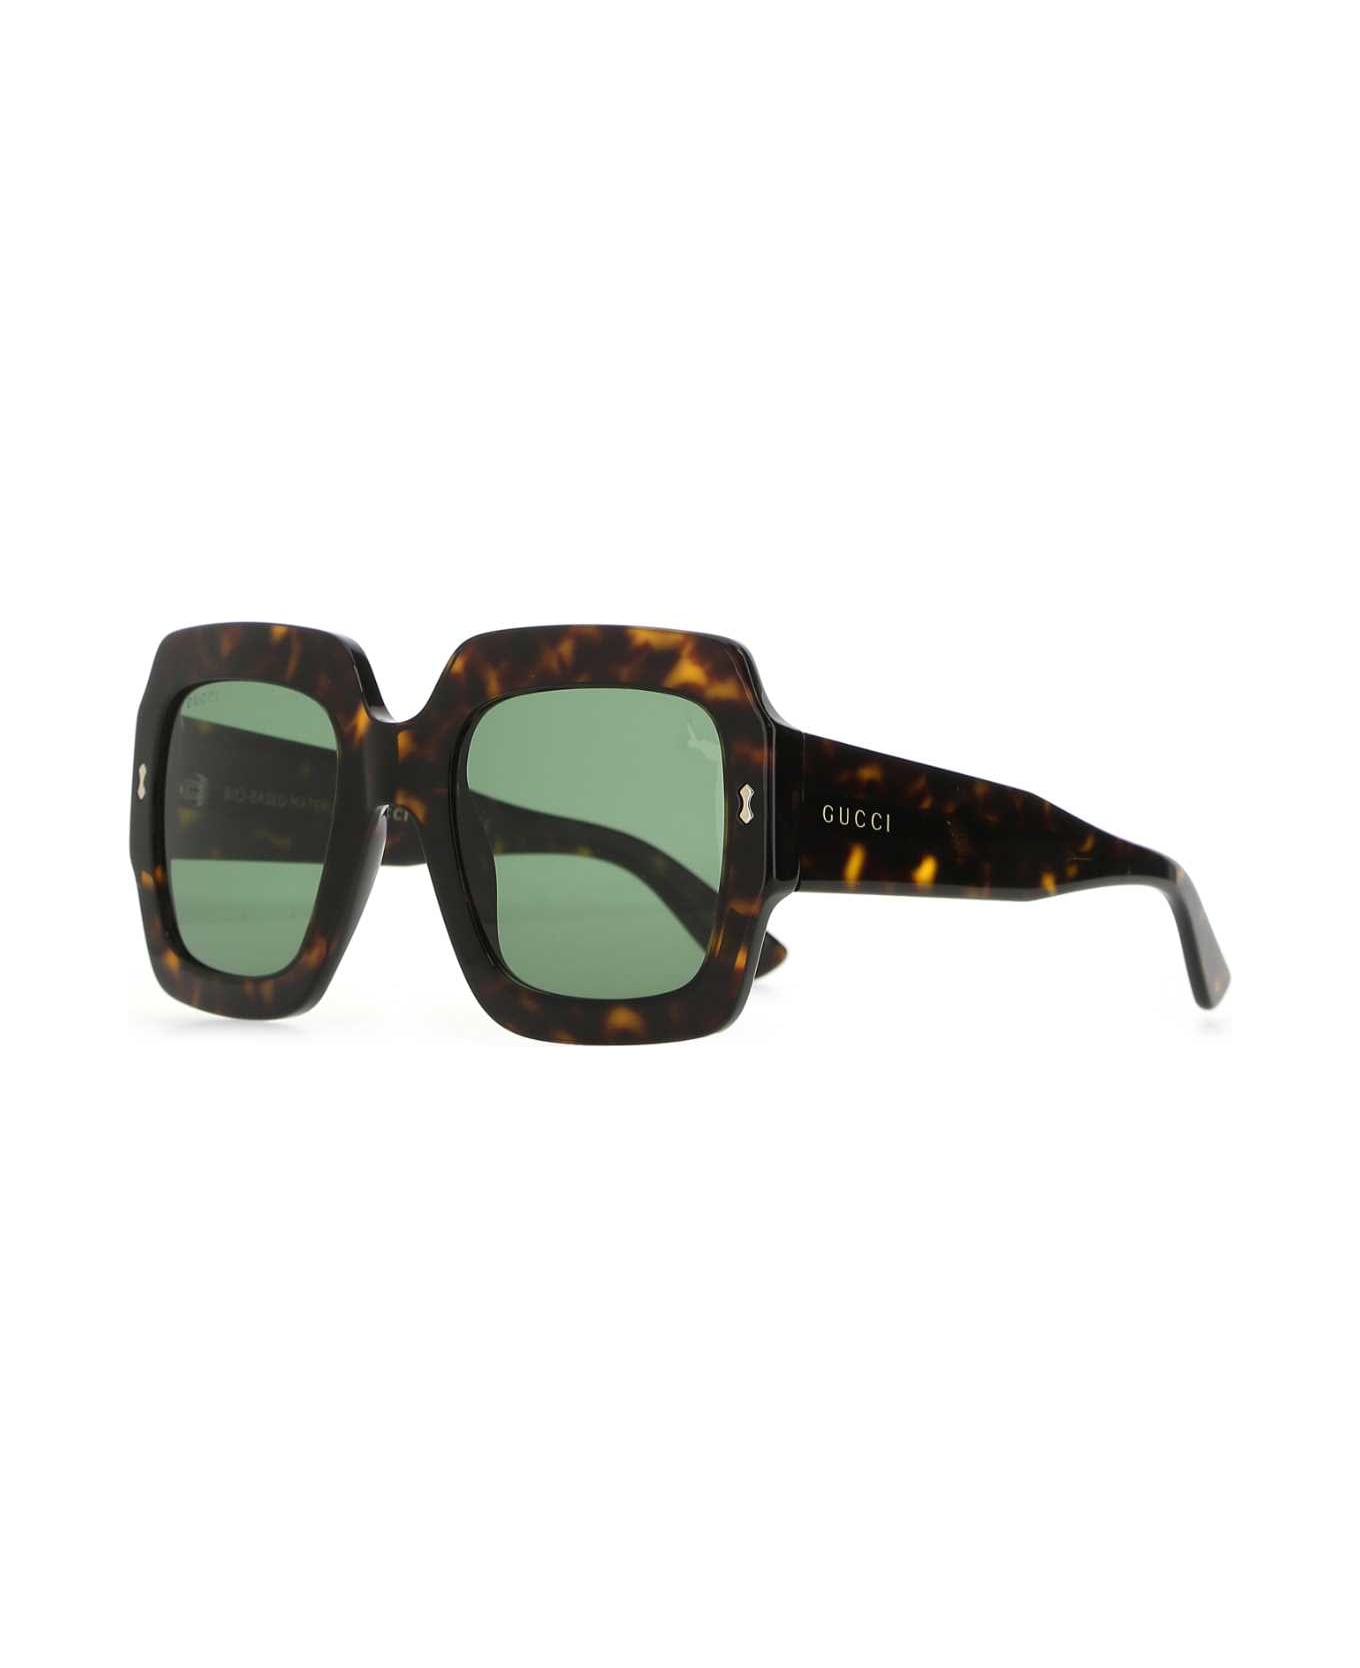 Gucci Multicolor Acetate Sunglasses - 2330